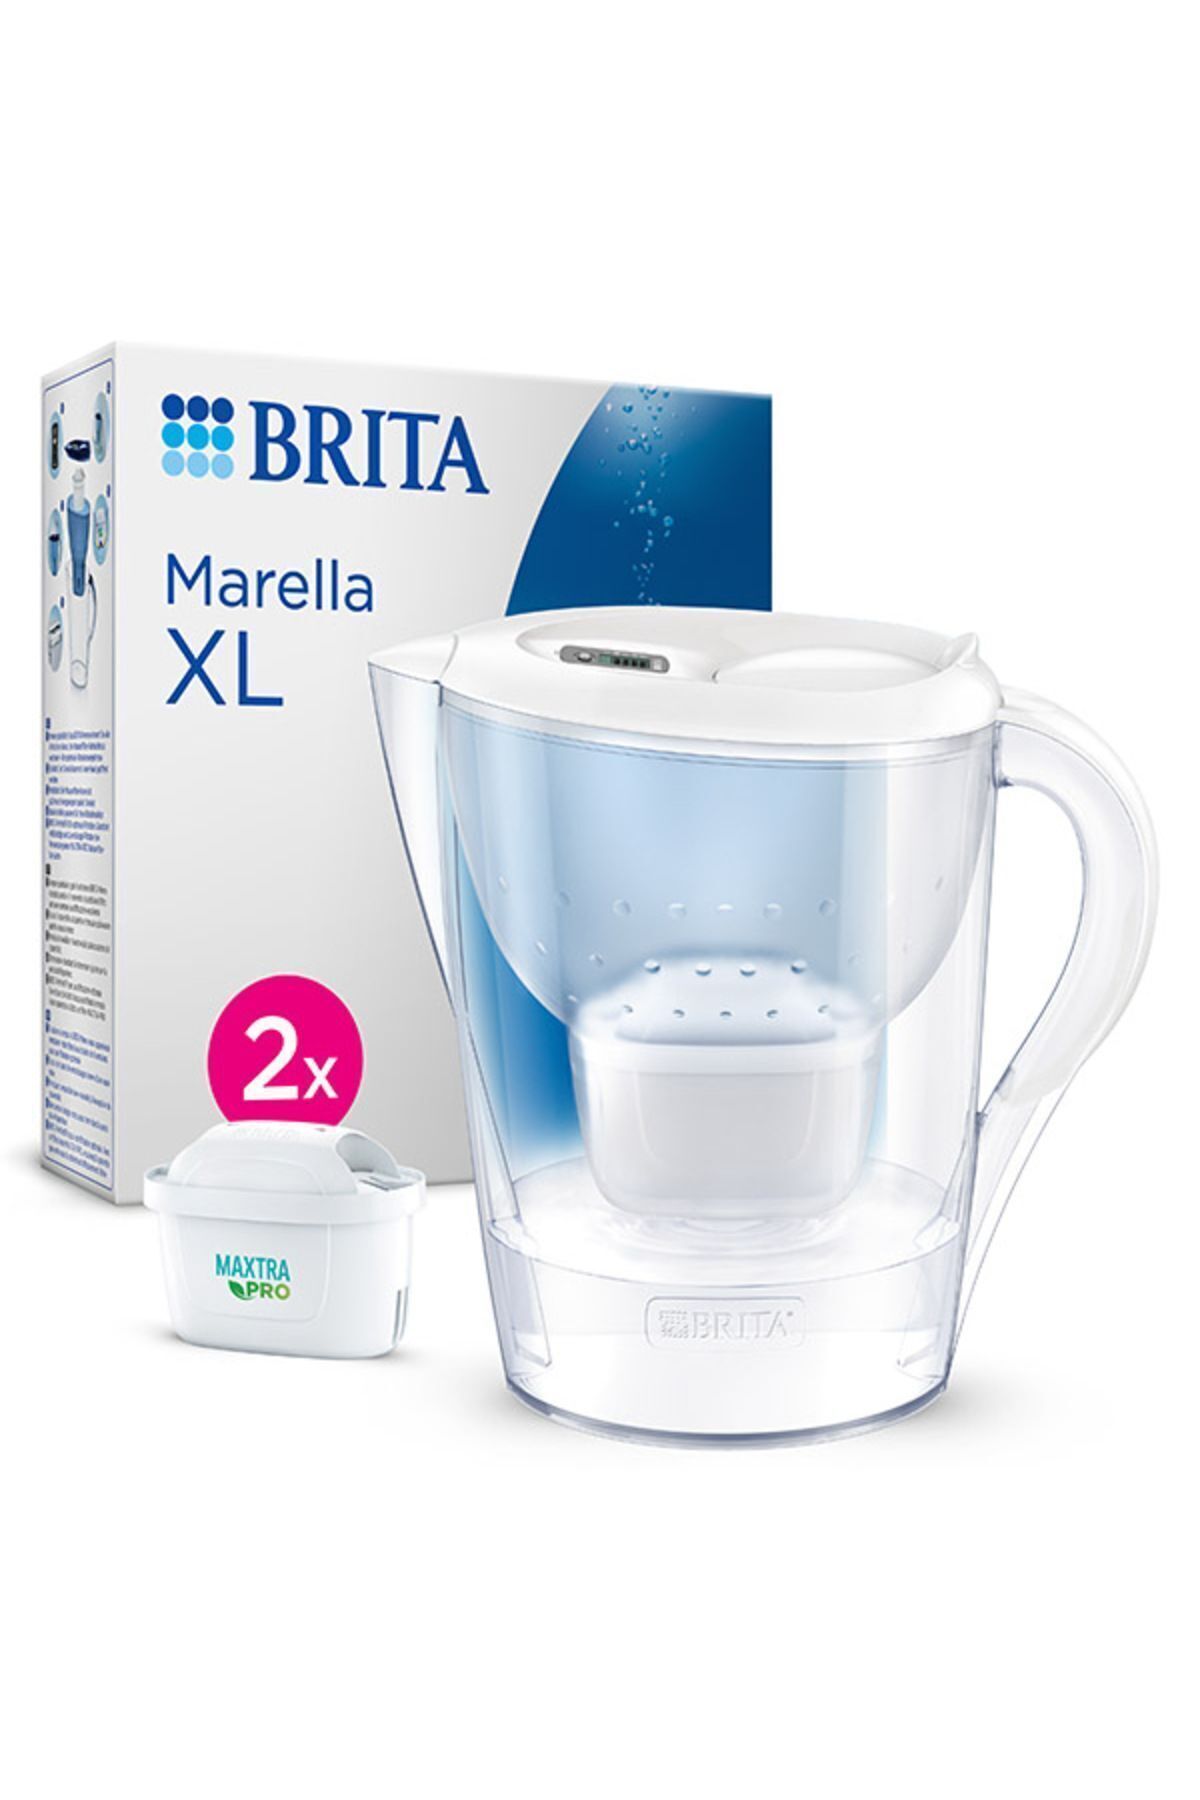 Brita Marella Xl 2x Maxtra Pro All-ın-1 Filtreli Su Arıtma Sürahisi – Beyaz